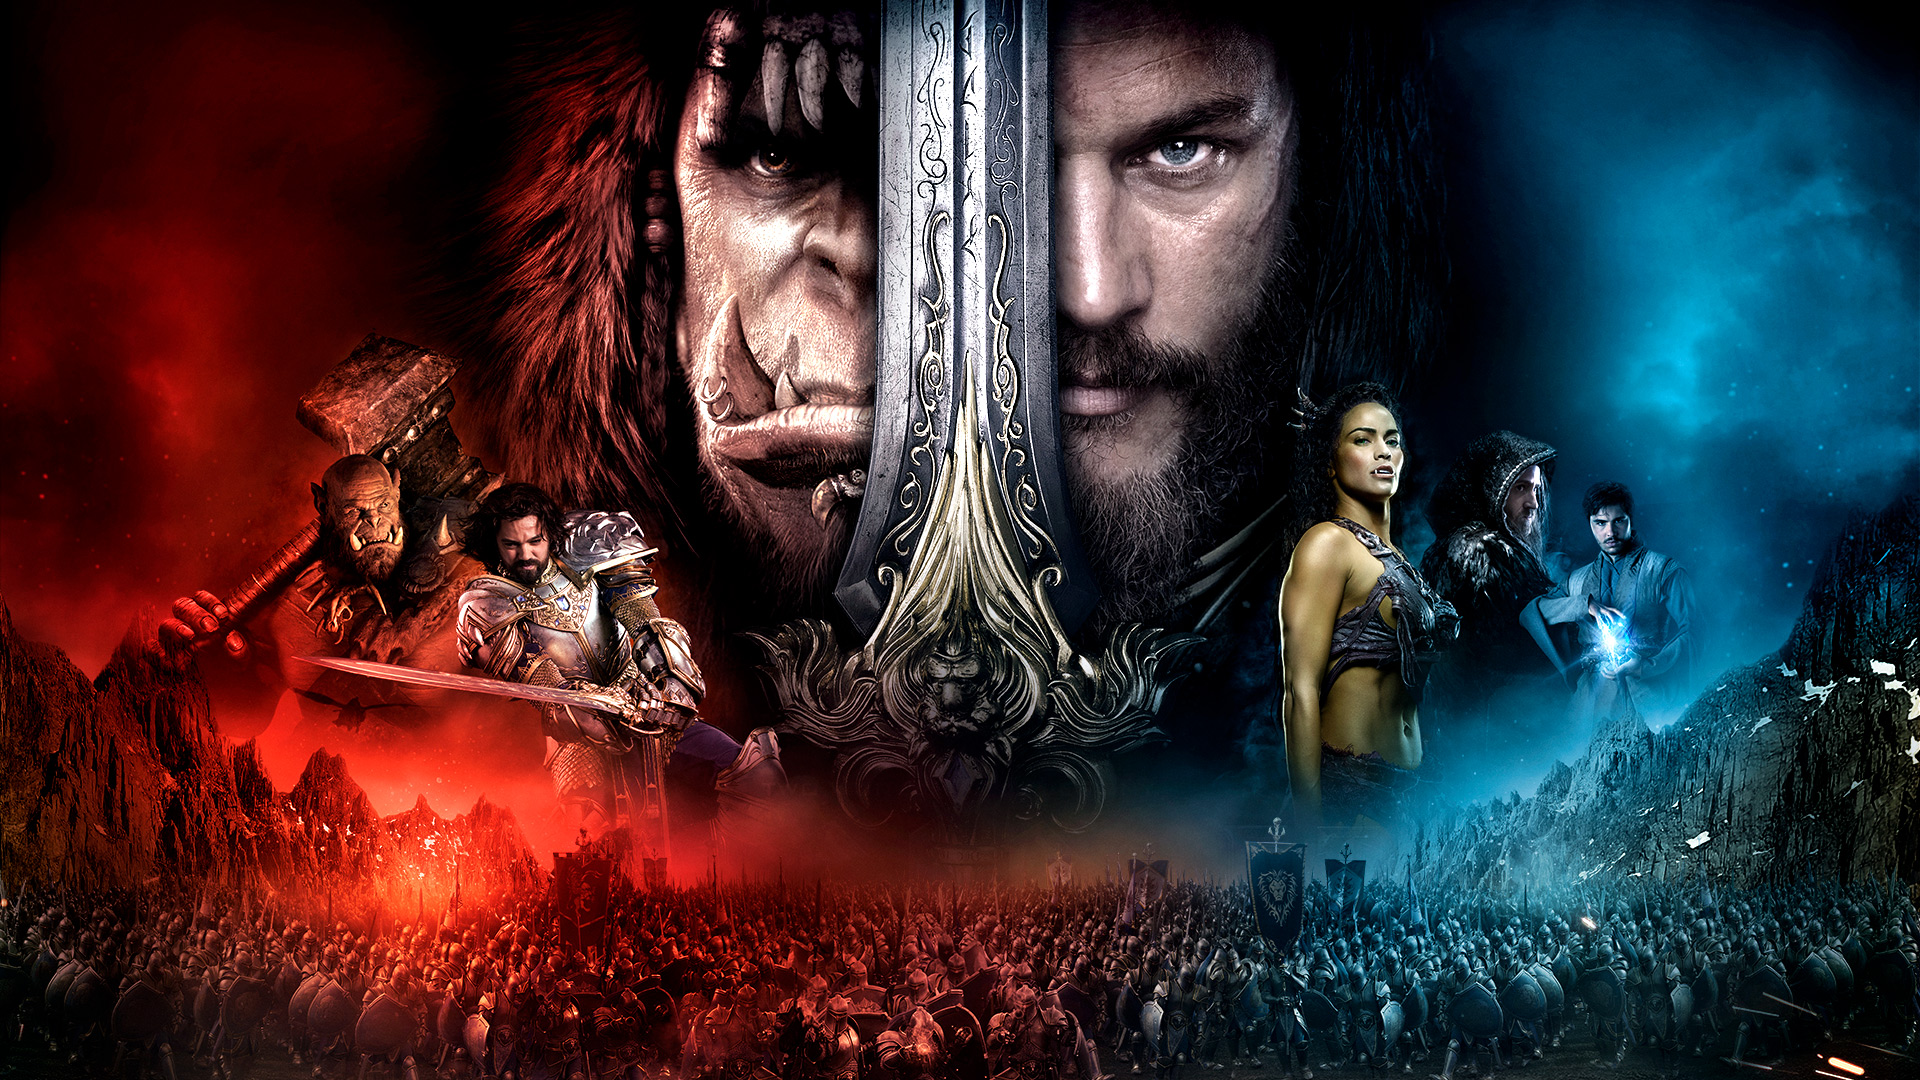 Warcraft Movie Background